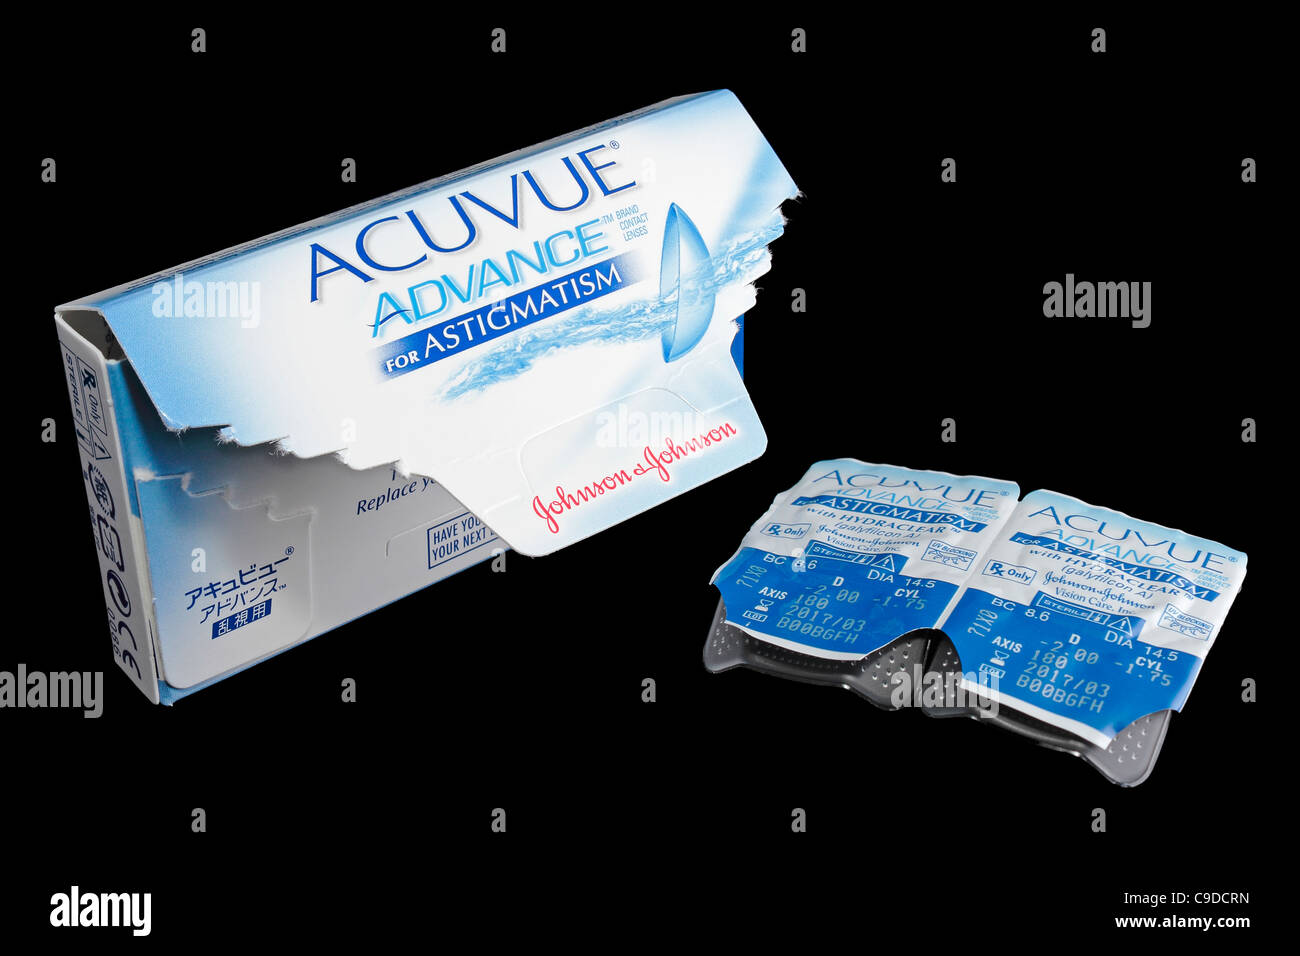 Offene Box von Acuvue Kontaktlinsen für Astigmatismus auf schwarzem Hintergrund Stockfoto